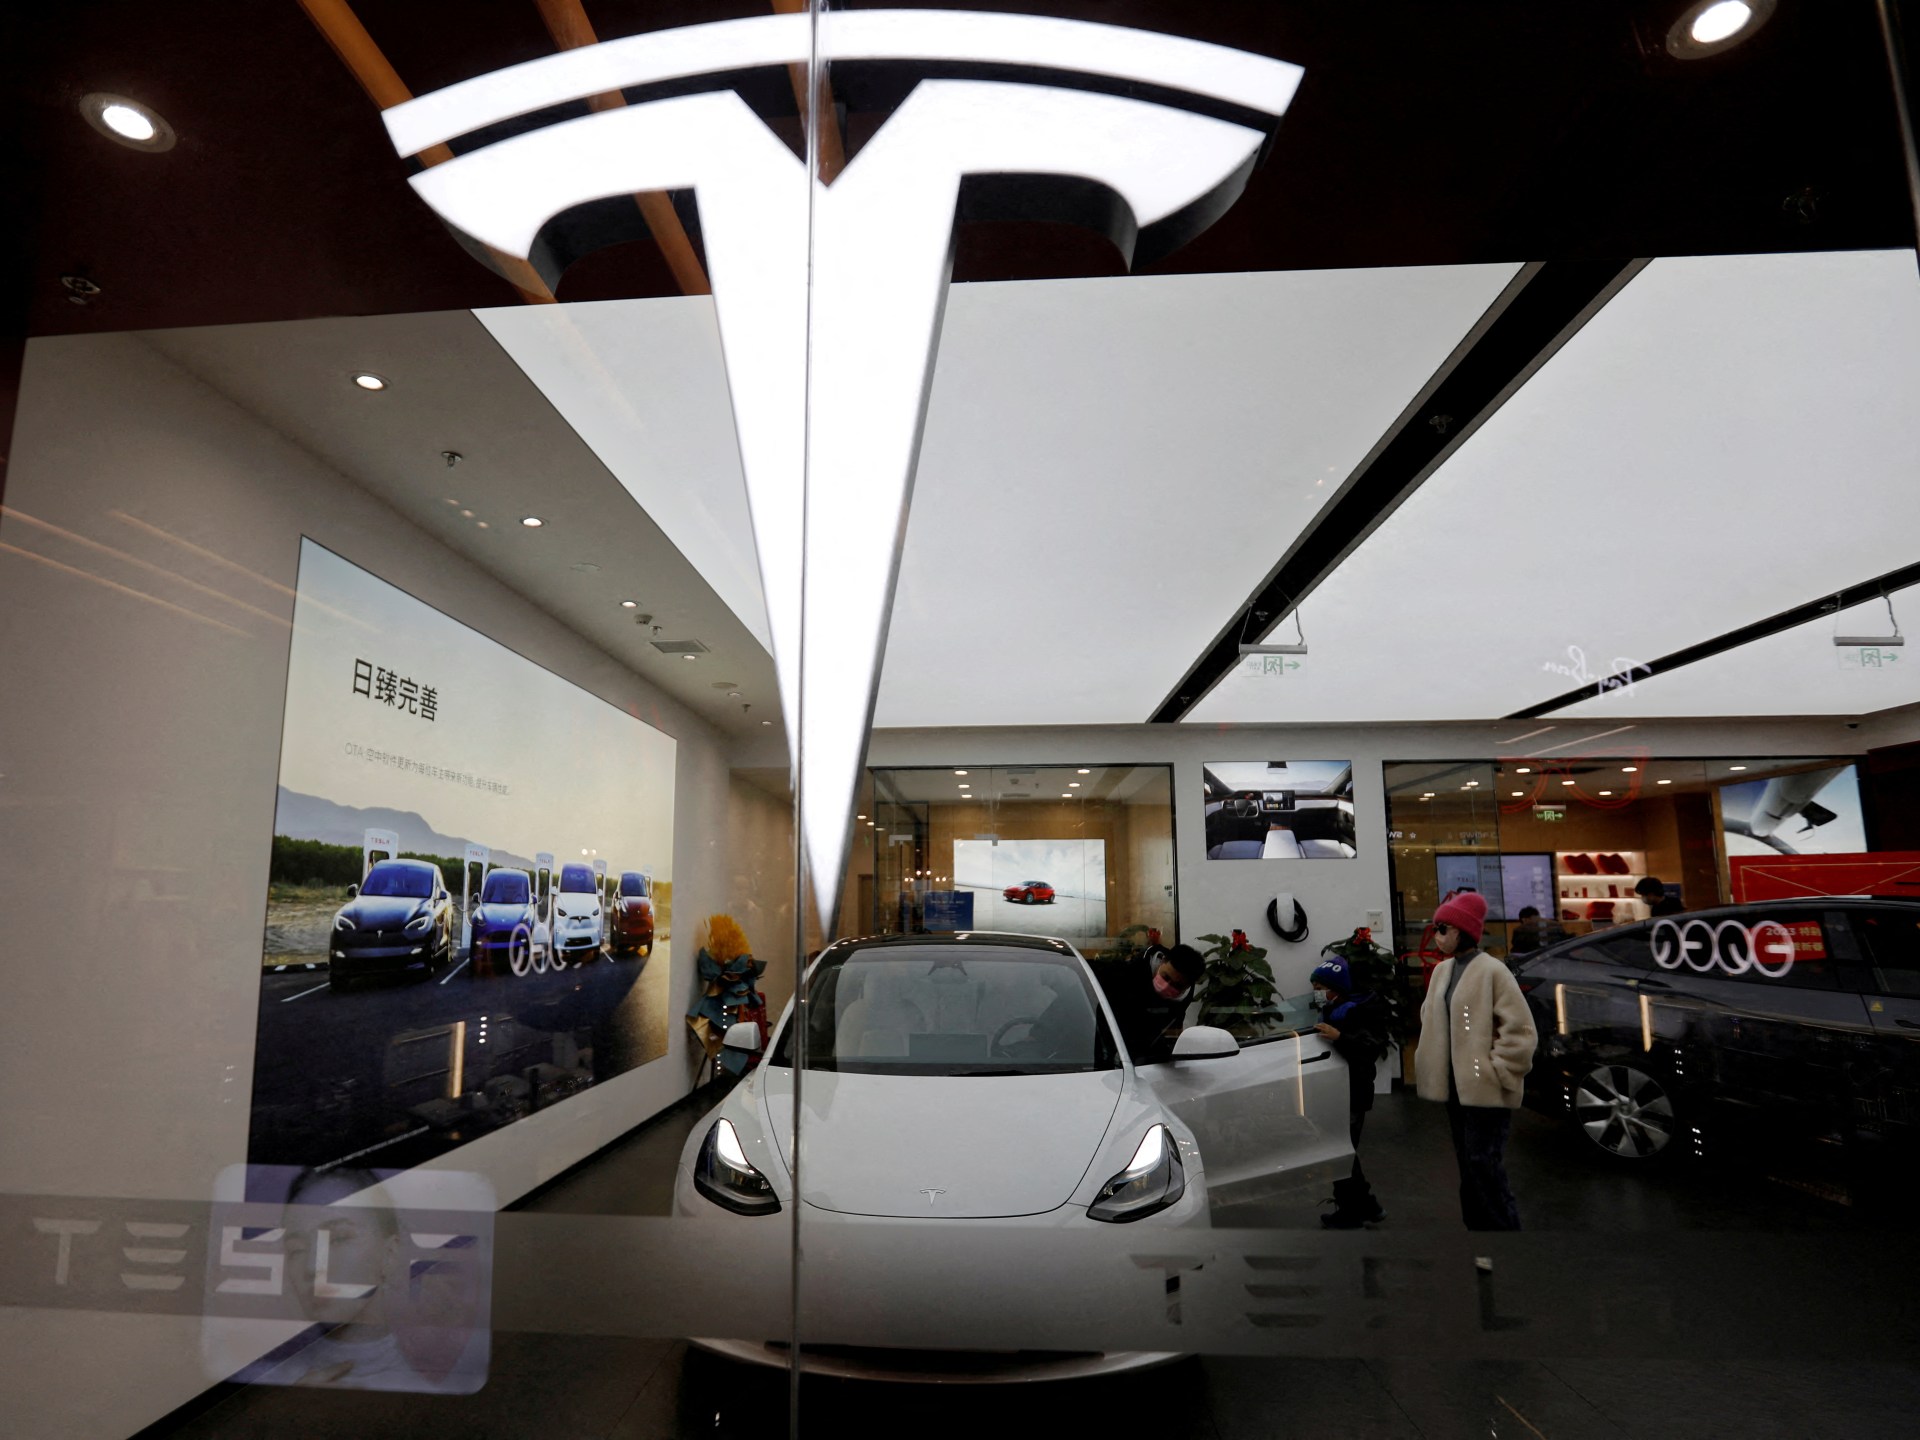 Penjualan Tesla naik setelah pemotongan harga, tapi jauh dari ekspektasi |  Bisnis dan ekonomi